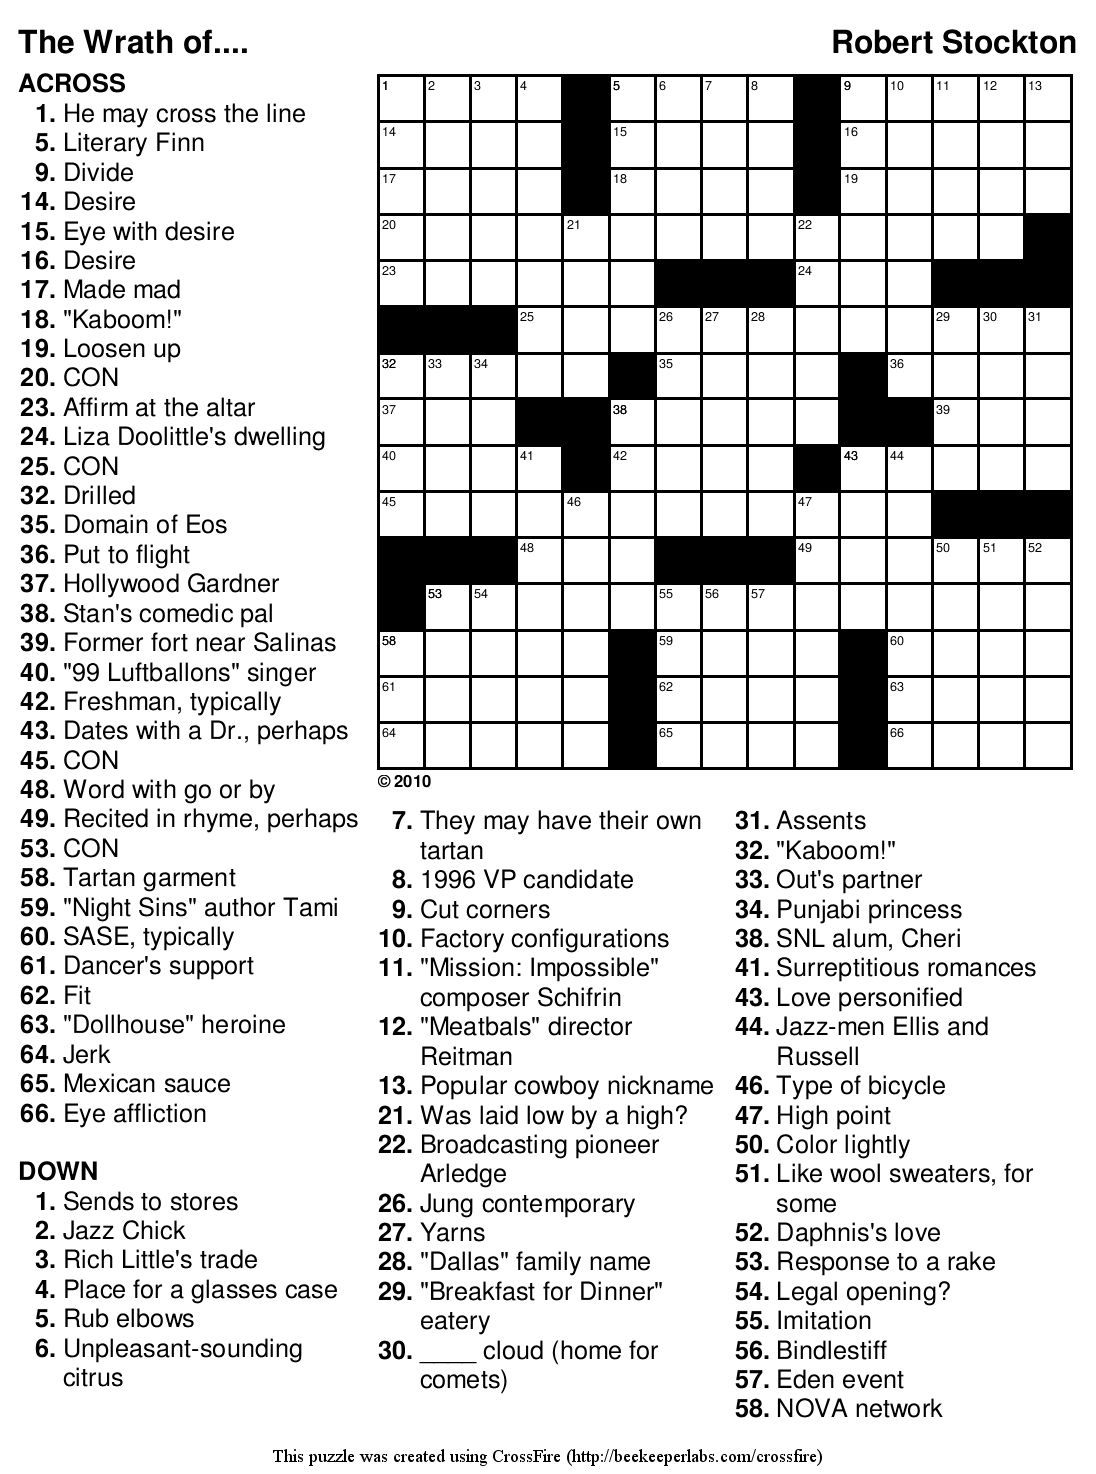 Printable 15x15 Crossword Puzzle